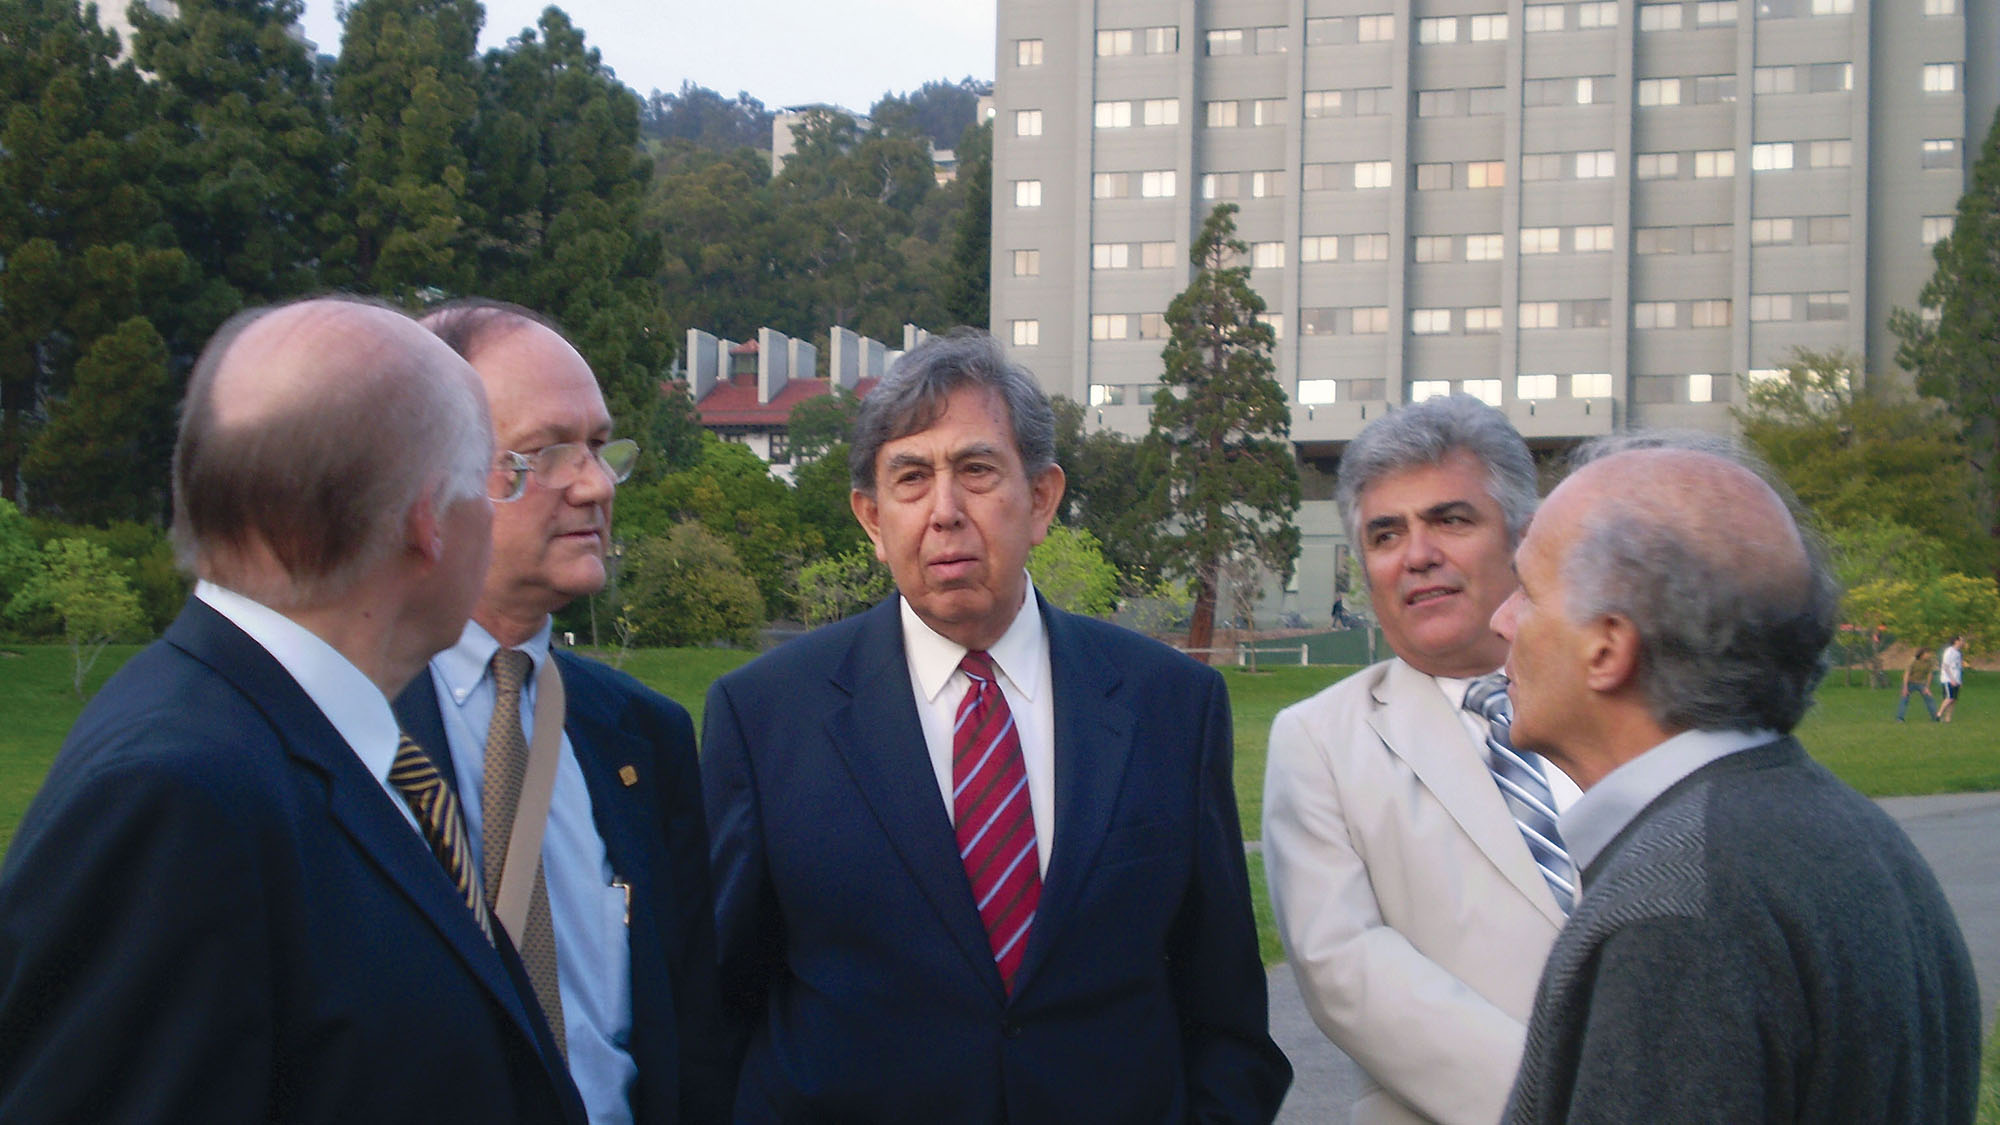 Cuauhtémoc Cárdenas on the UC Berkeley campus with José Narro Robles, Rector of UNAM; Enrique del Val; Jose Luis Talancón; and Harley Shaiken. (Photo by Beth Perry.)